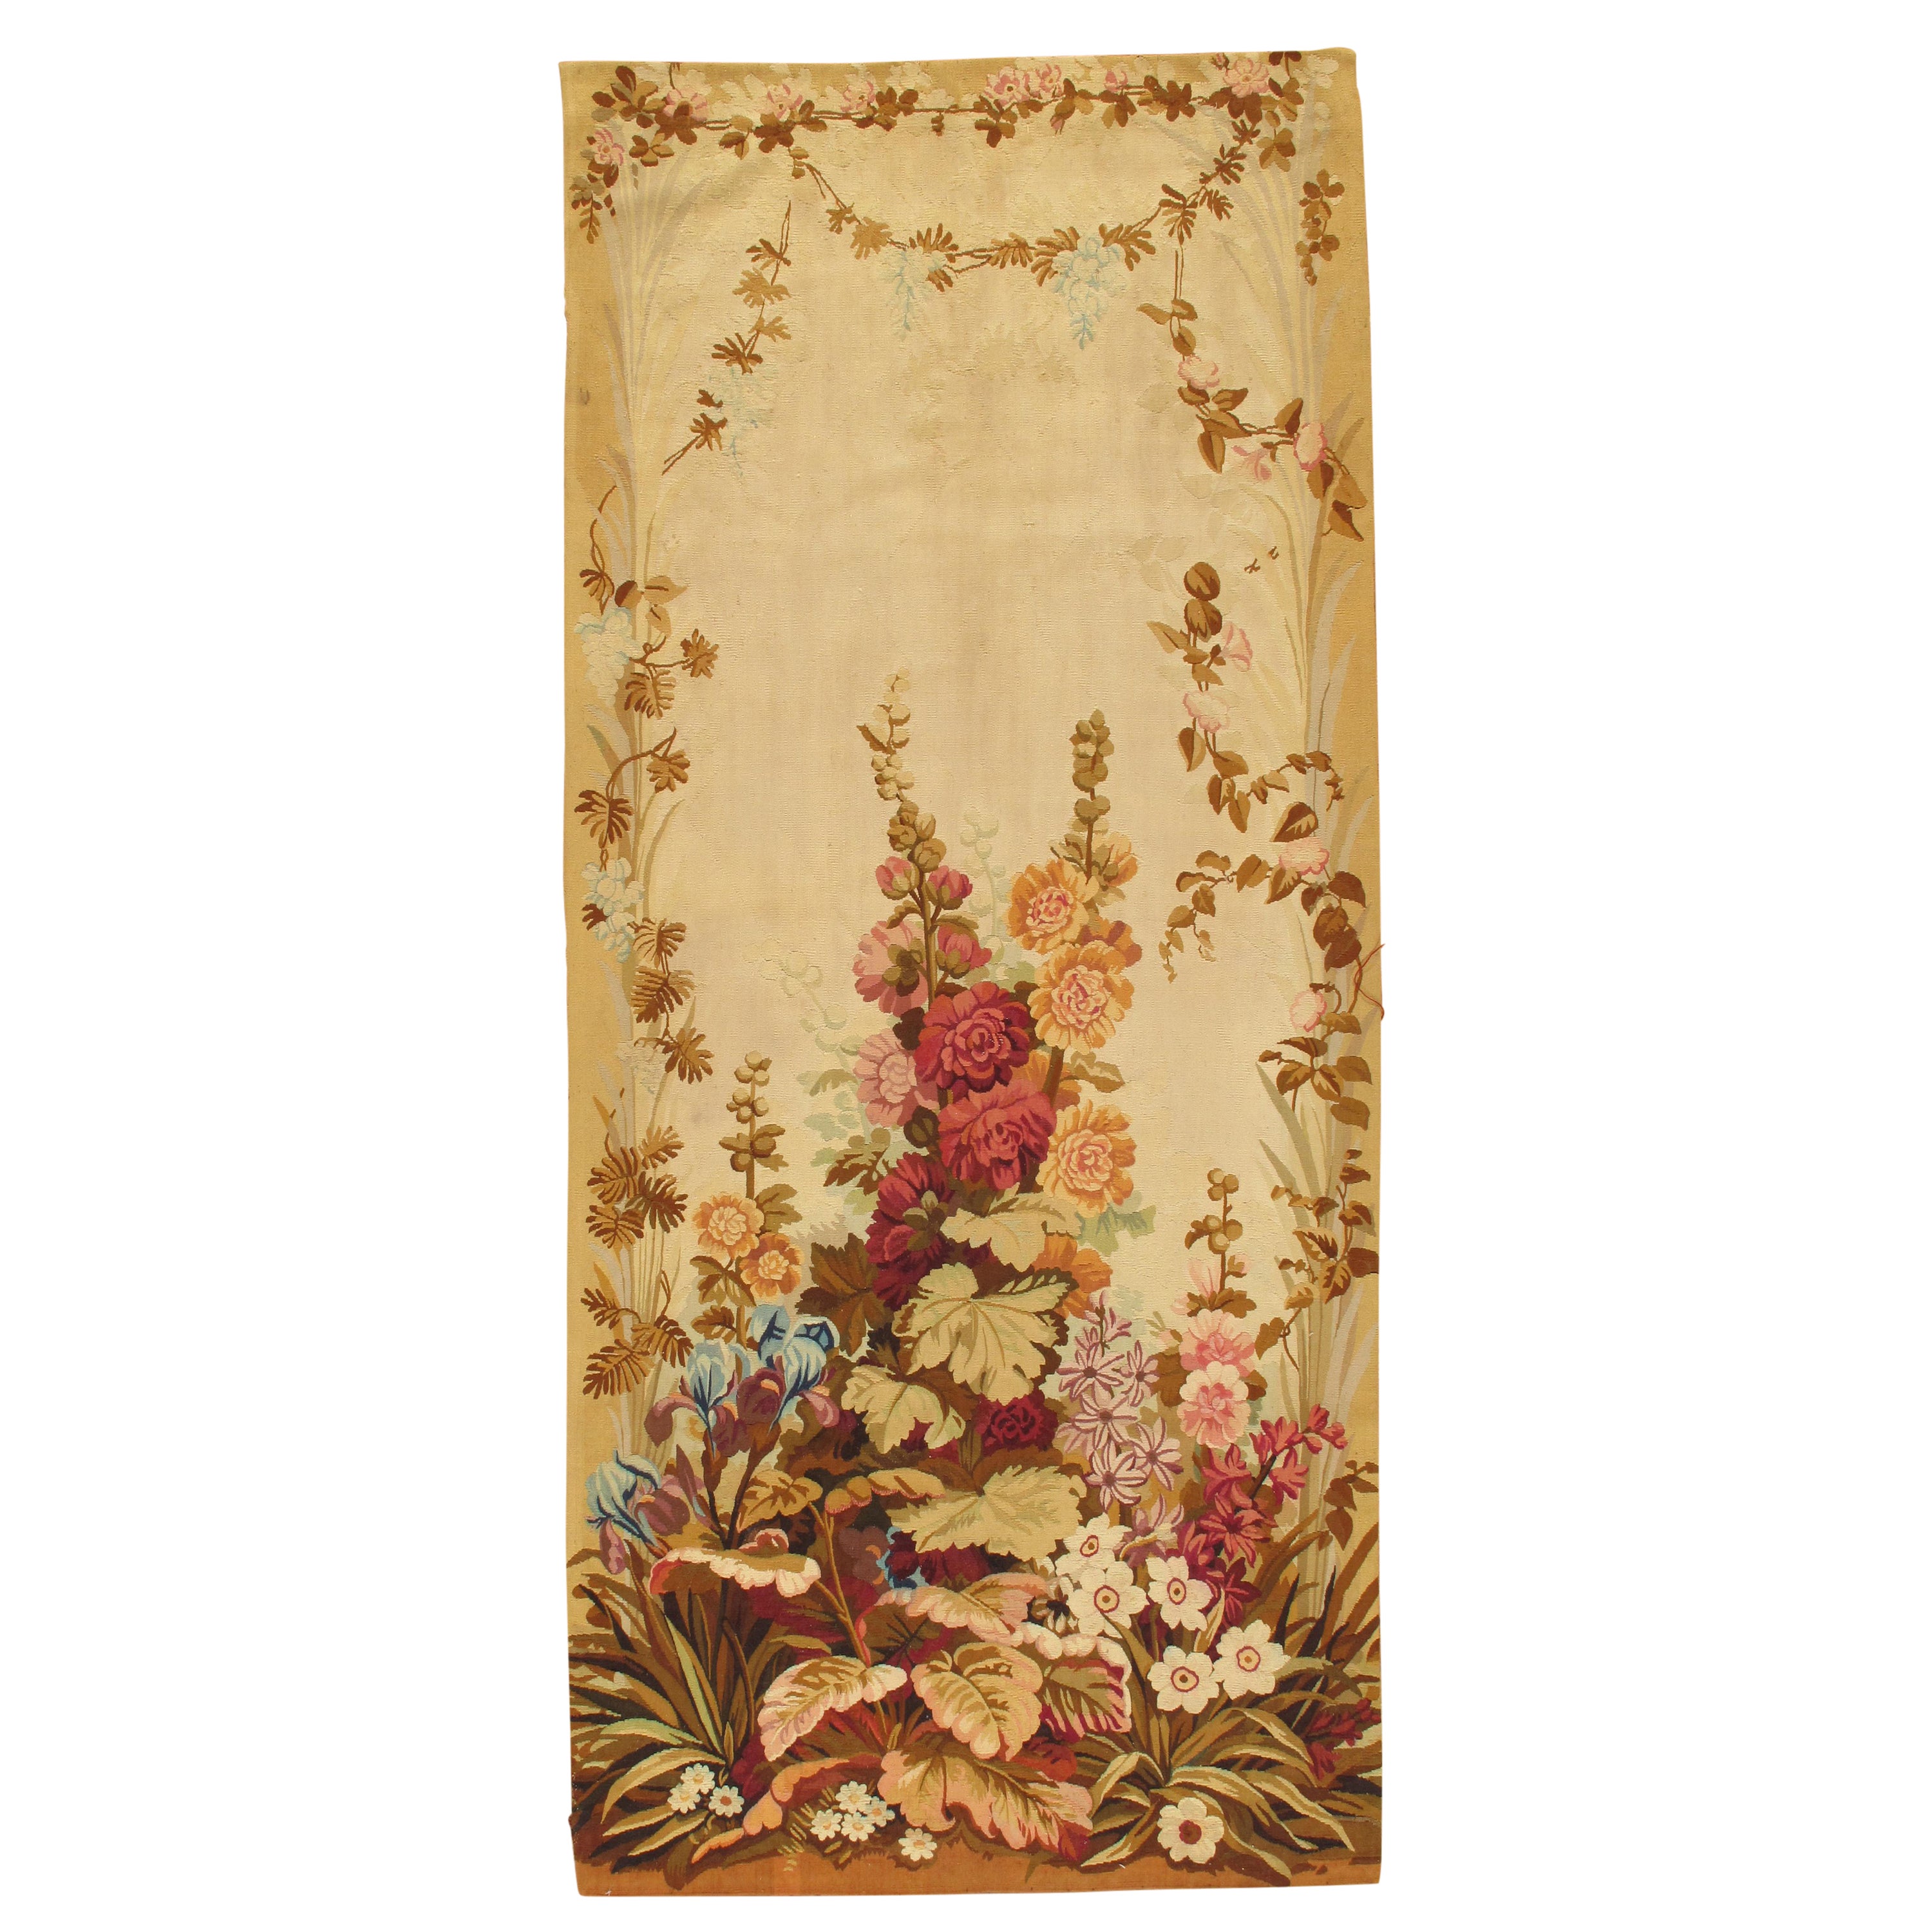 Antiker französischer Wandteppich aus der Zeit um 1900 in weichen herbstlichen Farben